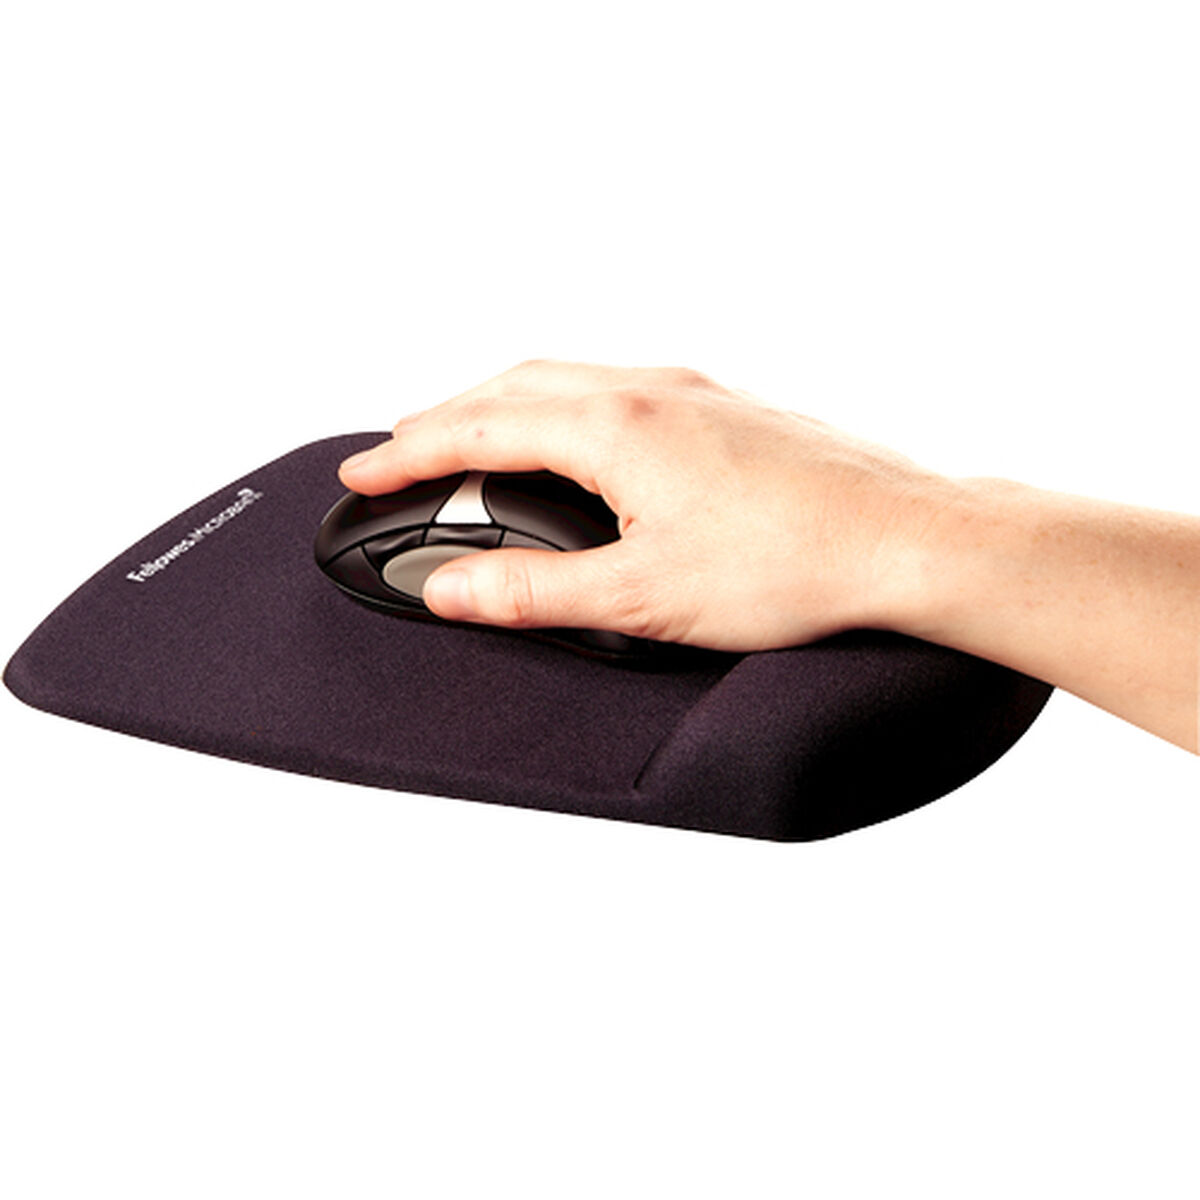 Mousepad mit Handballenauflage Fellowes Schwarz Gel Viskoelastischer Schaum